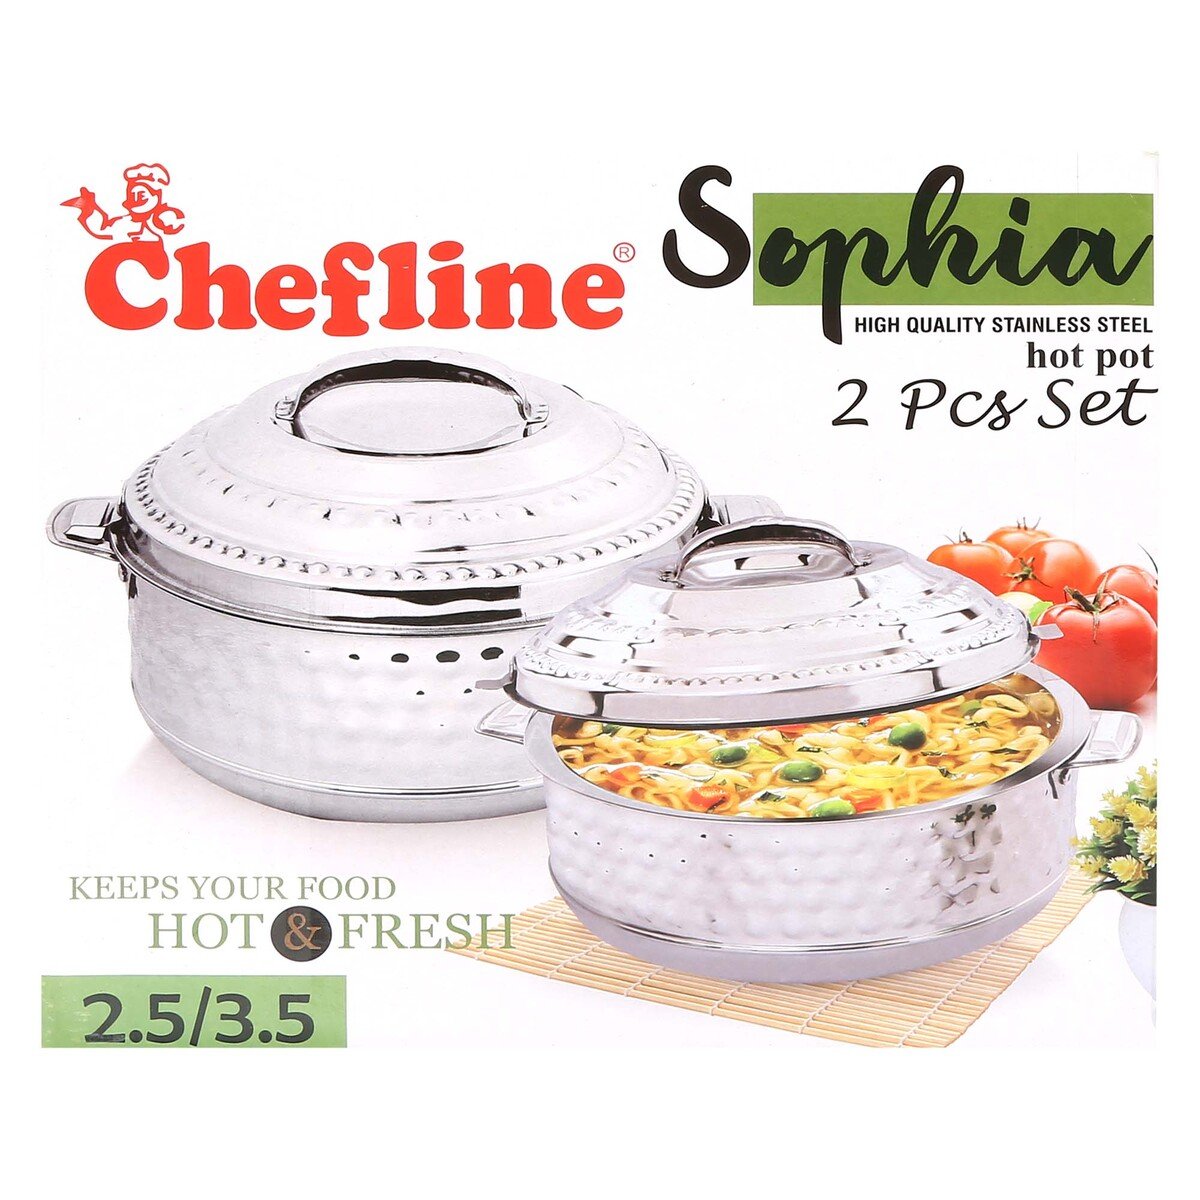 Chefline Stainless Steel Hot Pot 2pcs Set Sophia 2.5Ltr 3.5Ltr